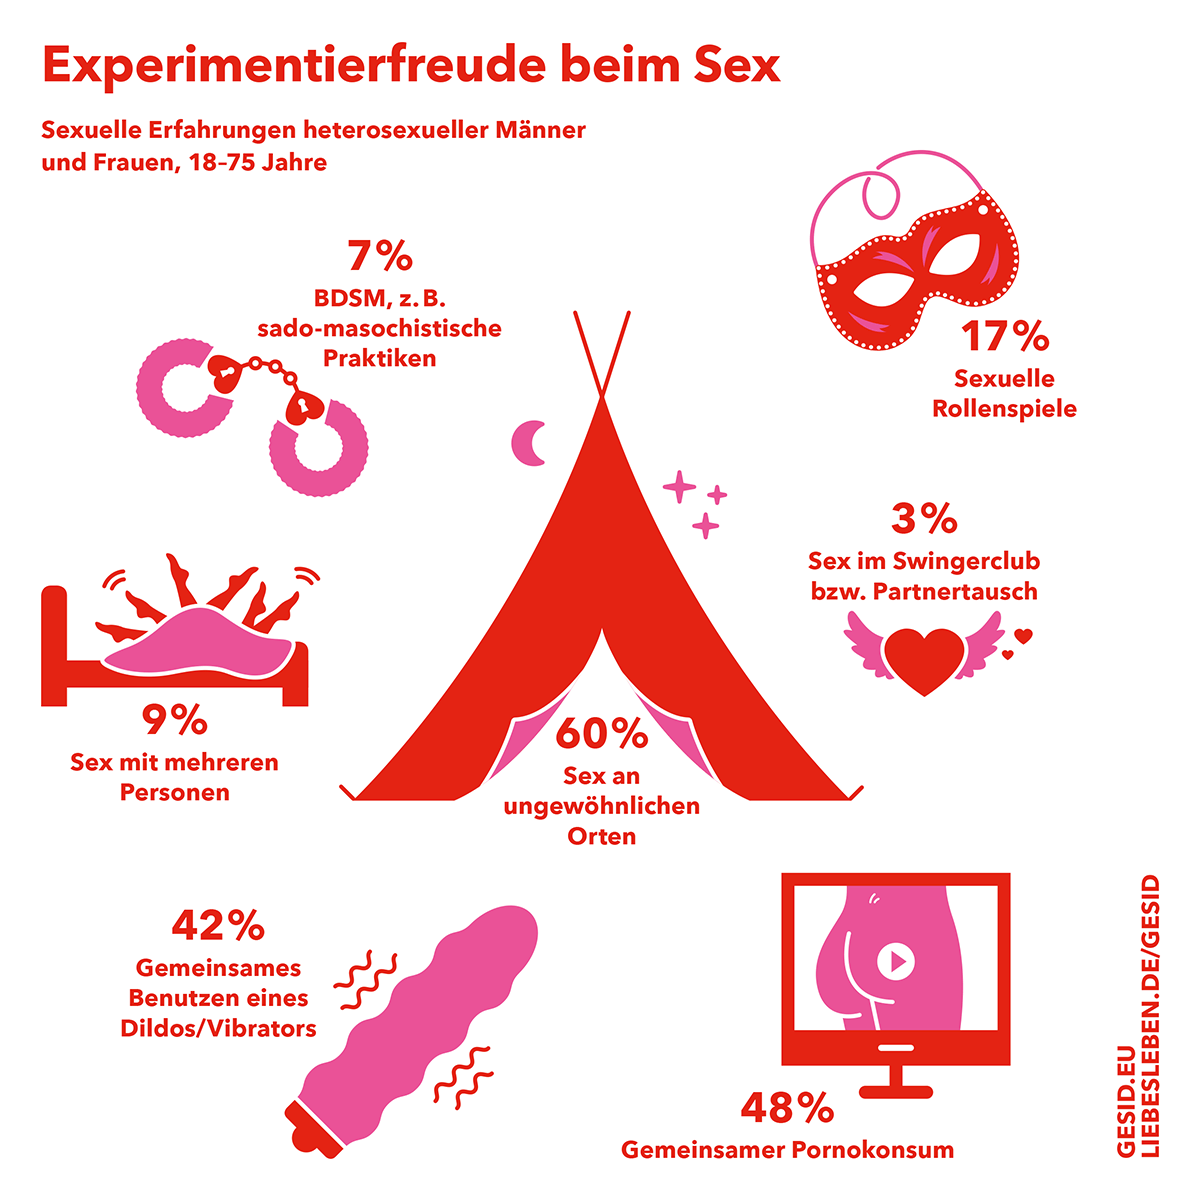 Experimentierfreude beim Sex. Sexuelle Erfahrungen heterosexueller Männer und Frauen, 18-75 Jahre. (Weitere Infos im nachfolgenden Text)